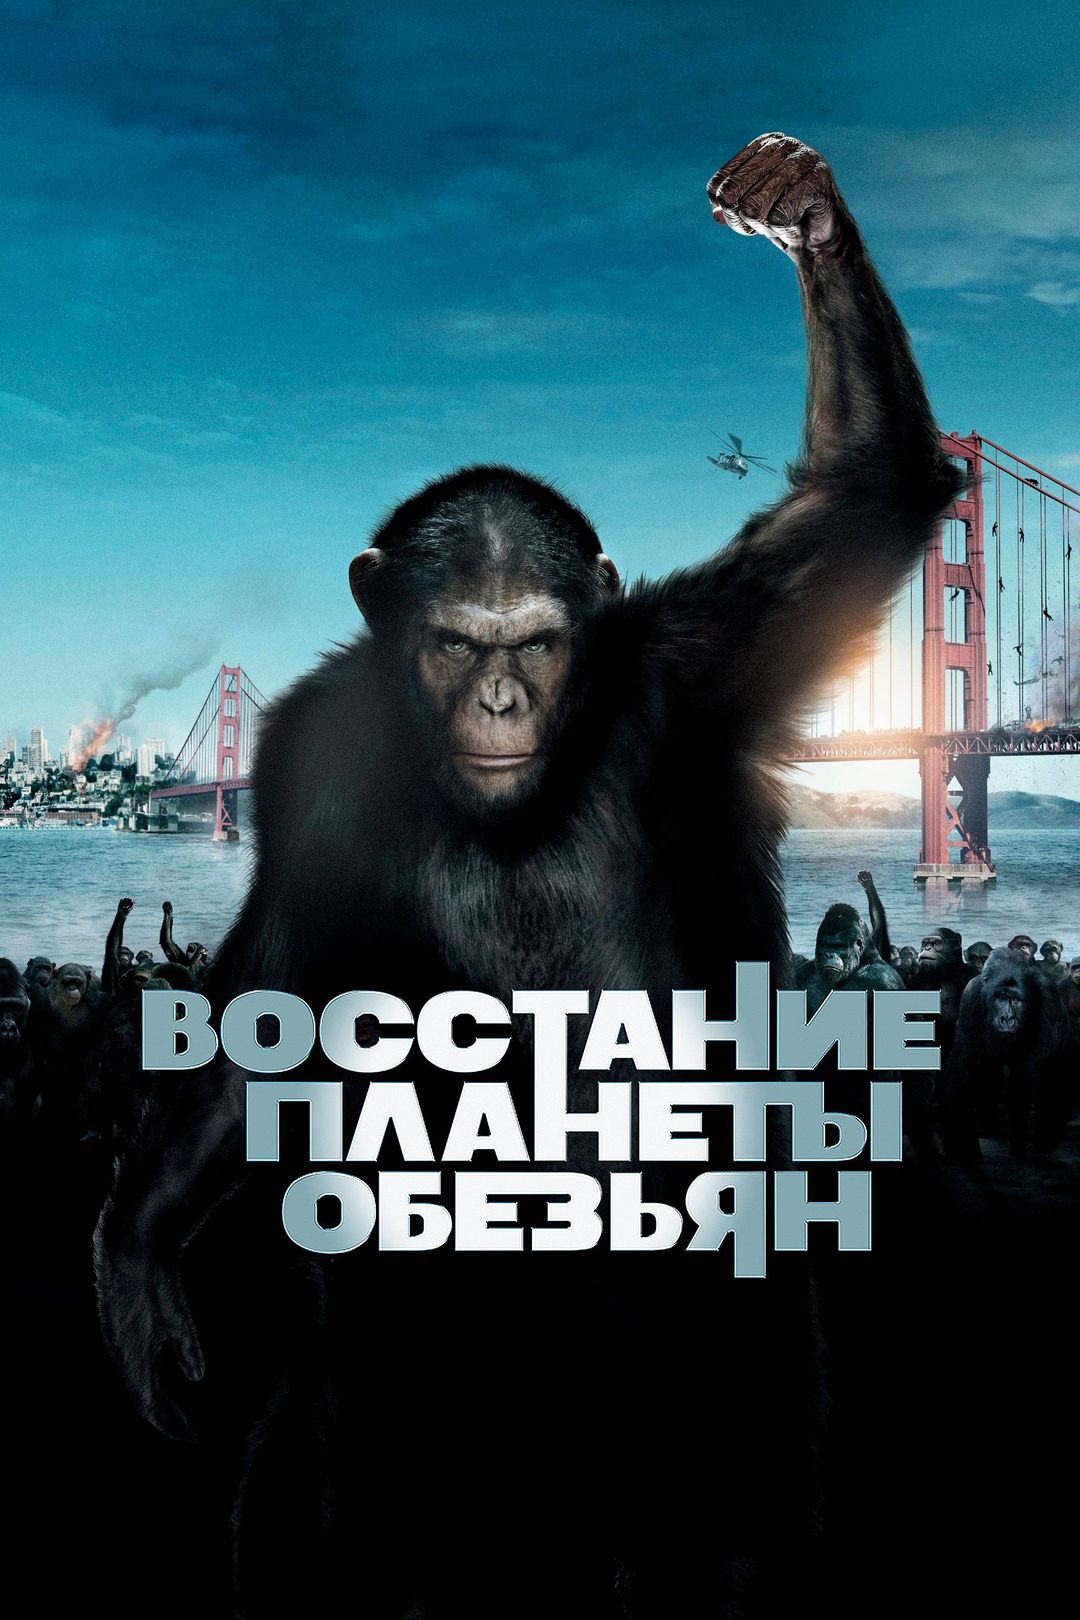 Планета обезьян революция с русскими субтитрами смотреть